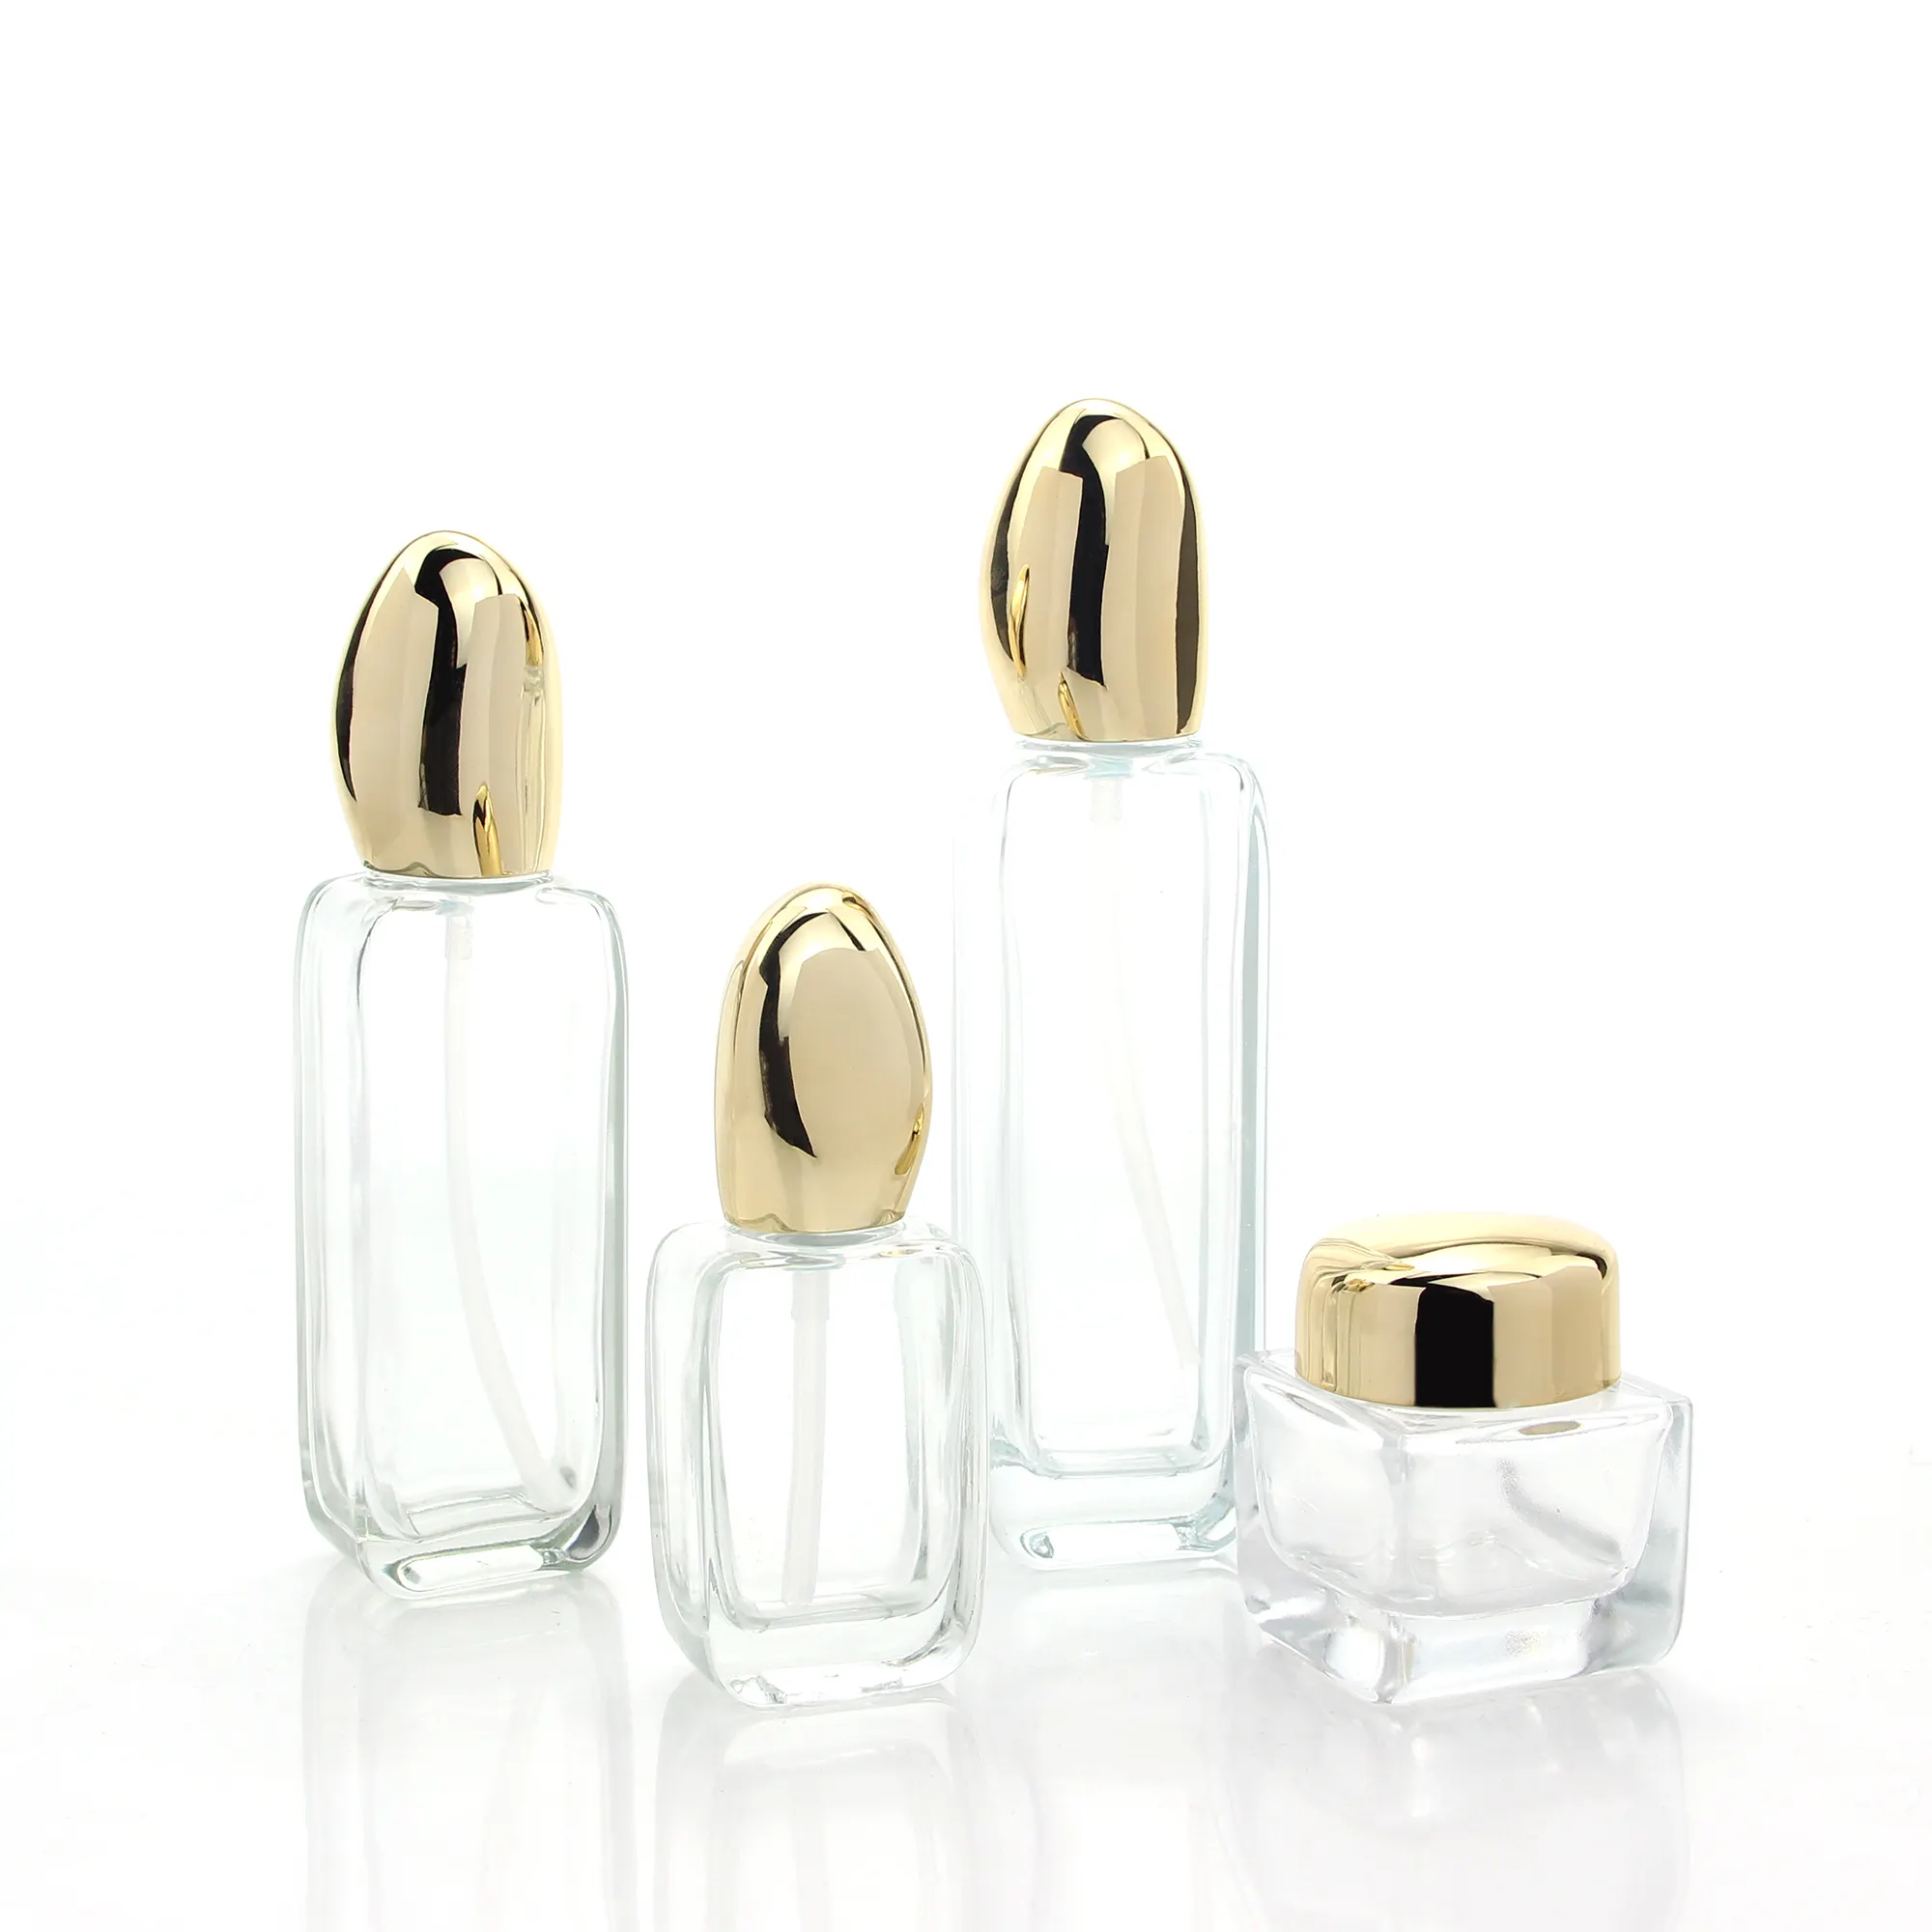 Новый дизайн, уникальная квадратная косметическая упаковка, бутылочки для лосьона, контейнеры и стеклянные банки с золотой крышкой